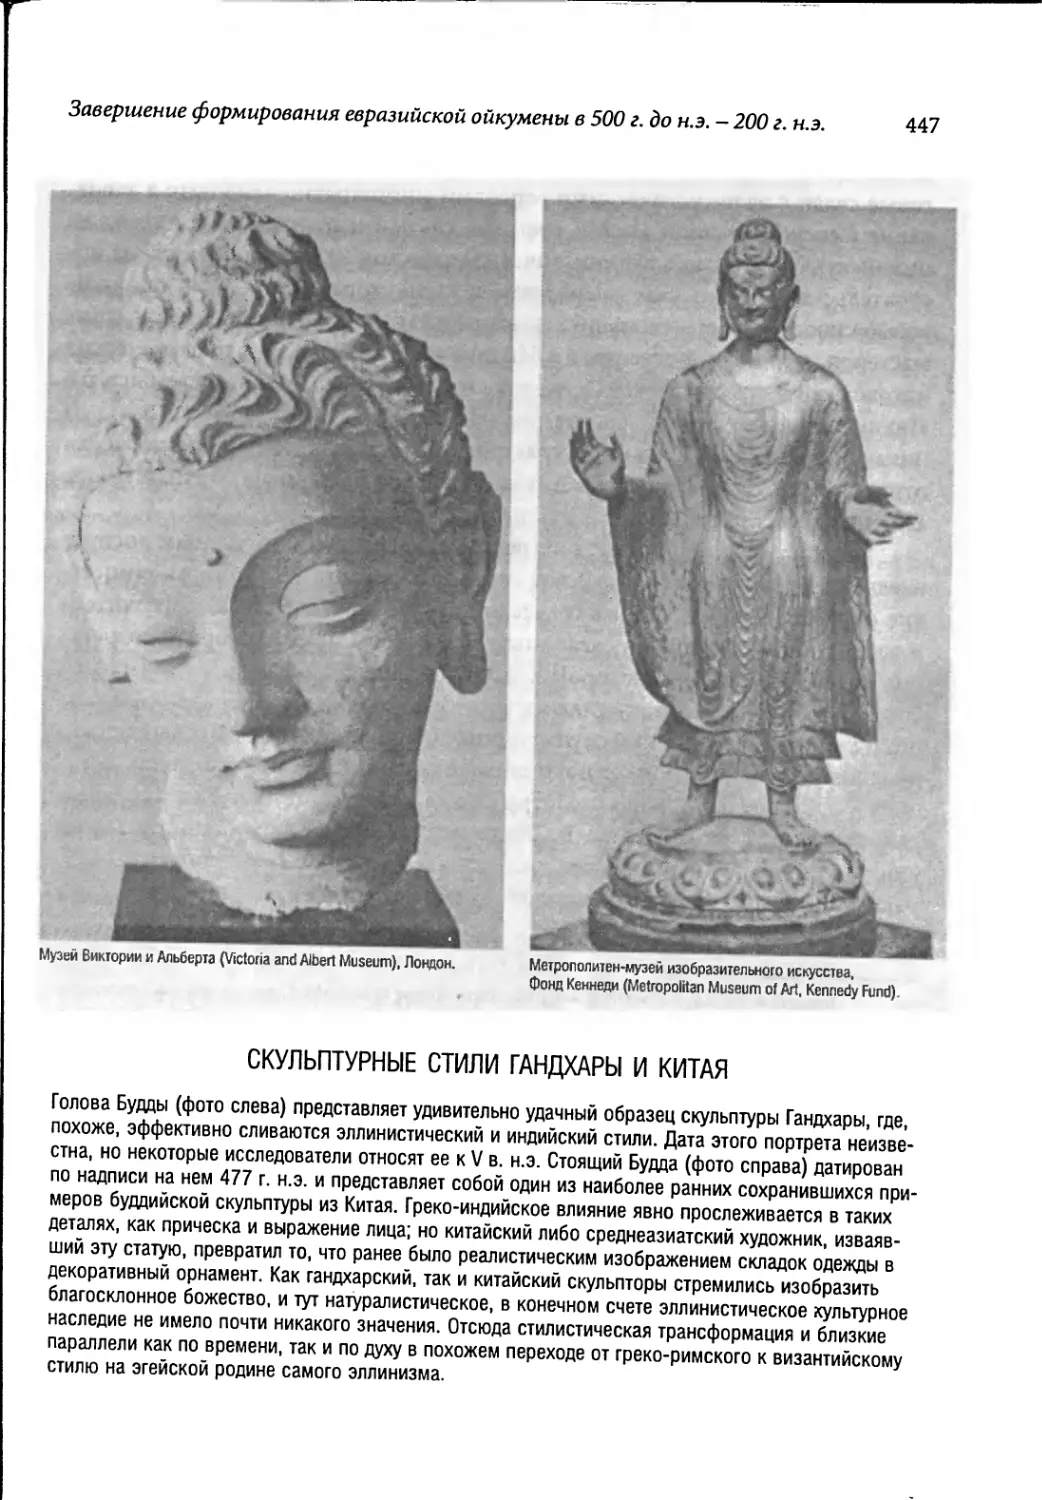 Скульптурные стили Гандхары и Китая [447]